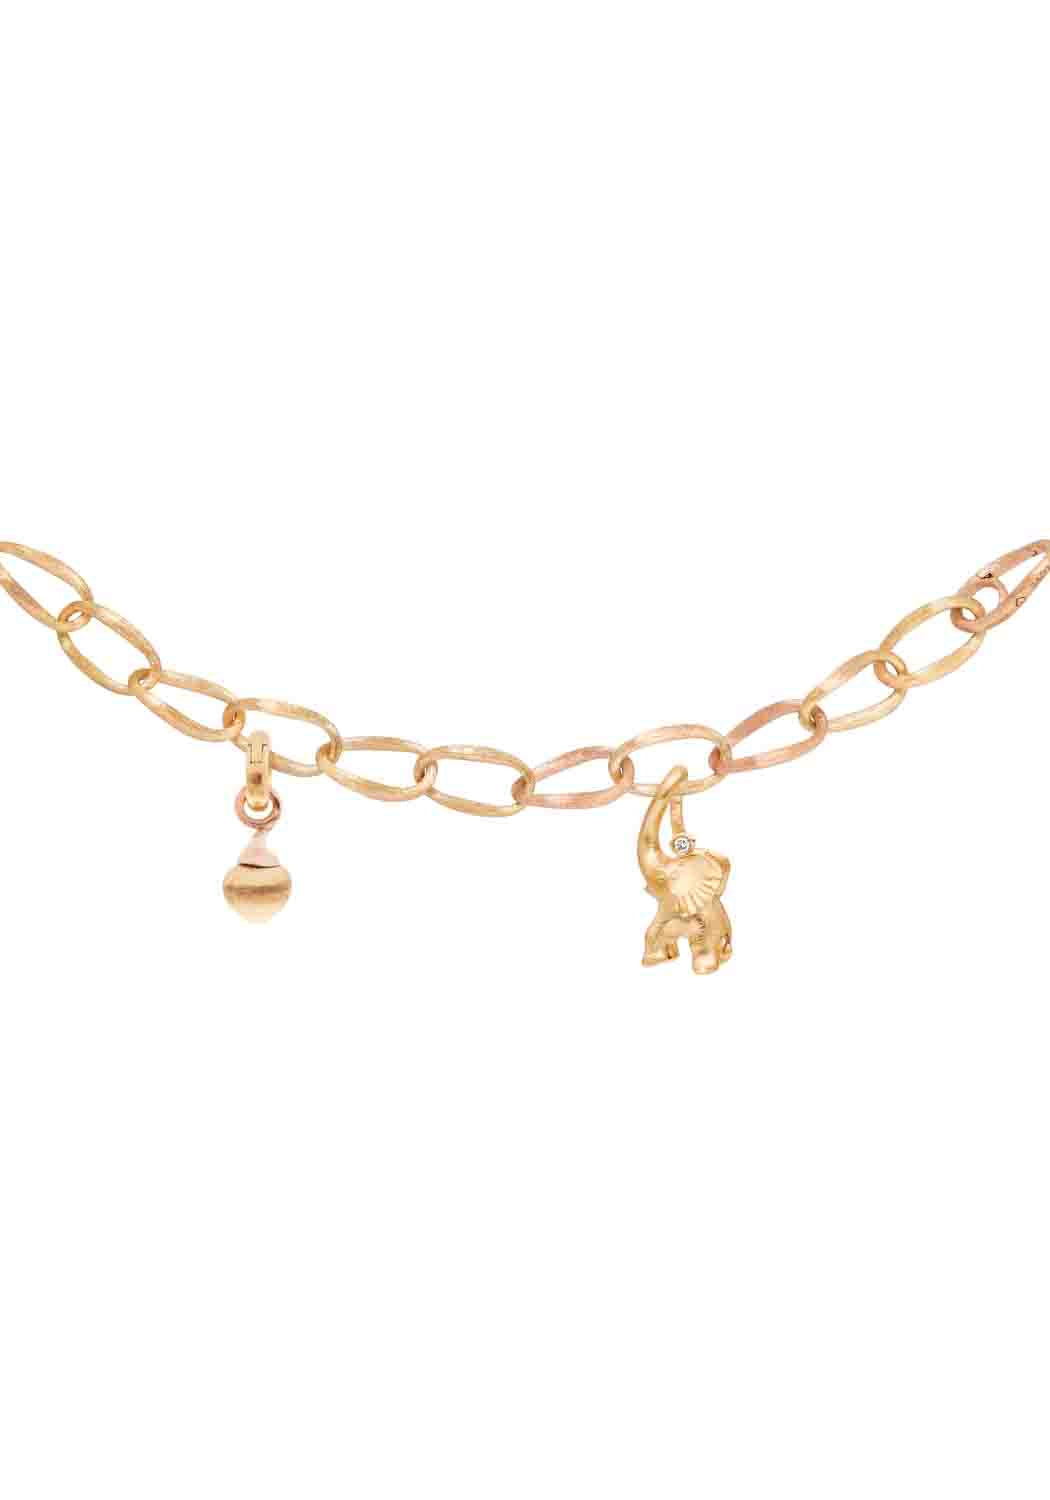 OLE LYNGGAARD Love 18KYRG Medium Chain Link Bracelet